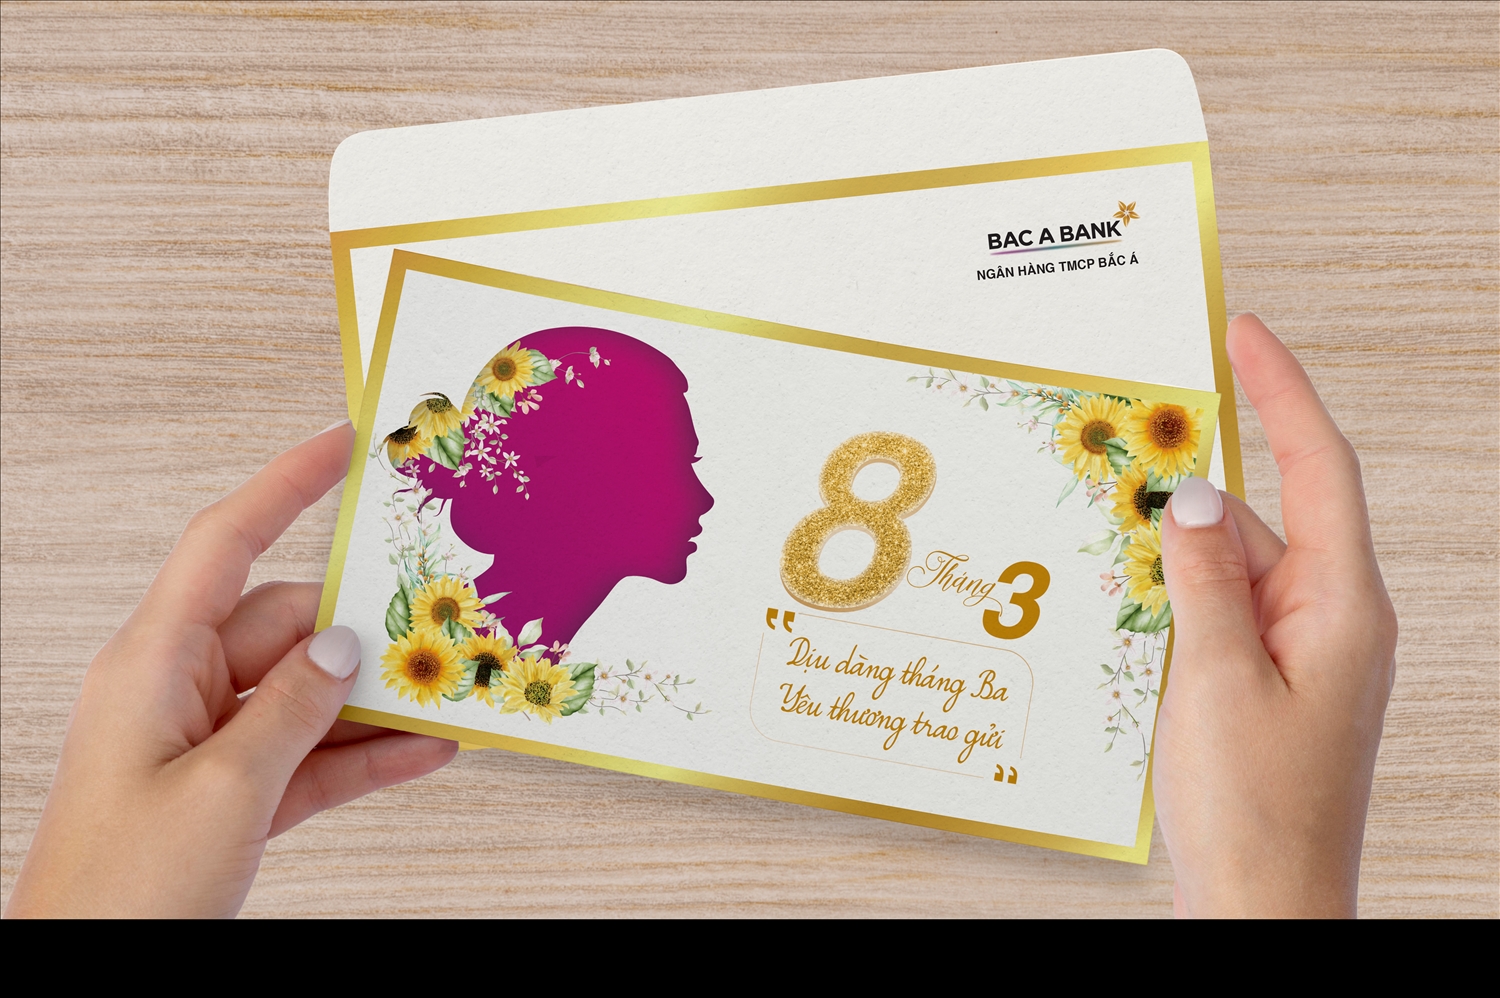 Ngân hàng TMCP Bắc Á triển khai chương trình tặng quà đặc biệt dành cho các khách hàng nữ gửi tiết kiệm trên toàn quốc nhân ngày phụ nữ 8/3